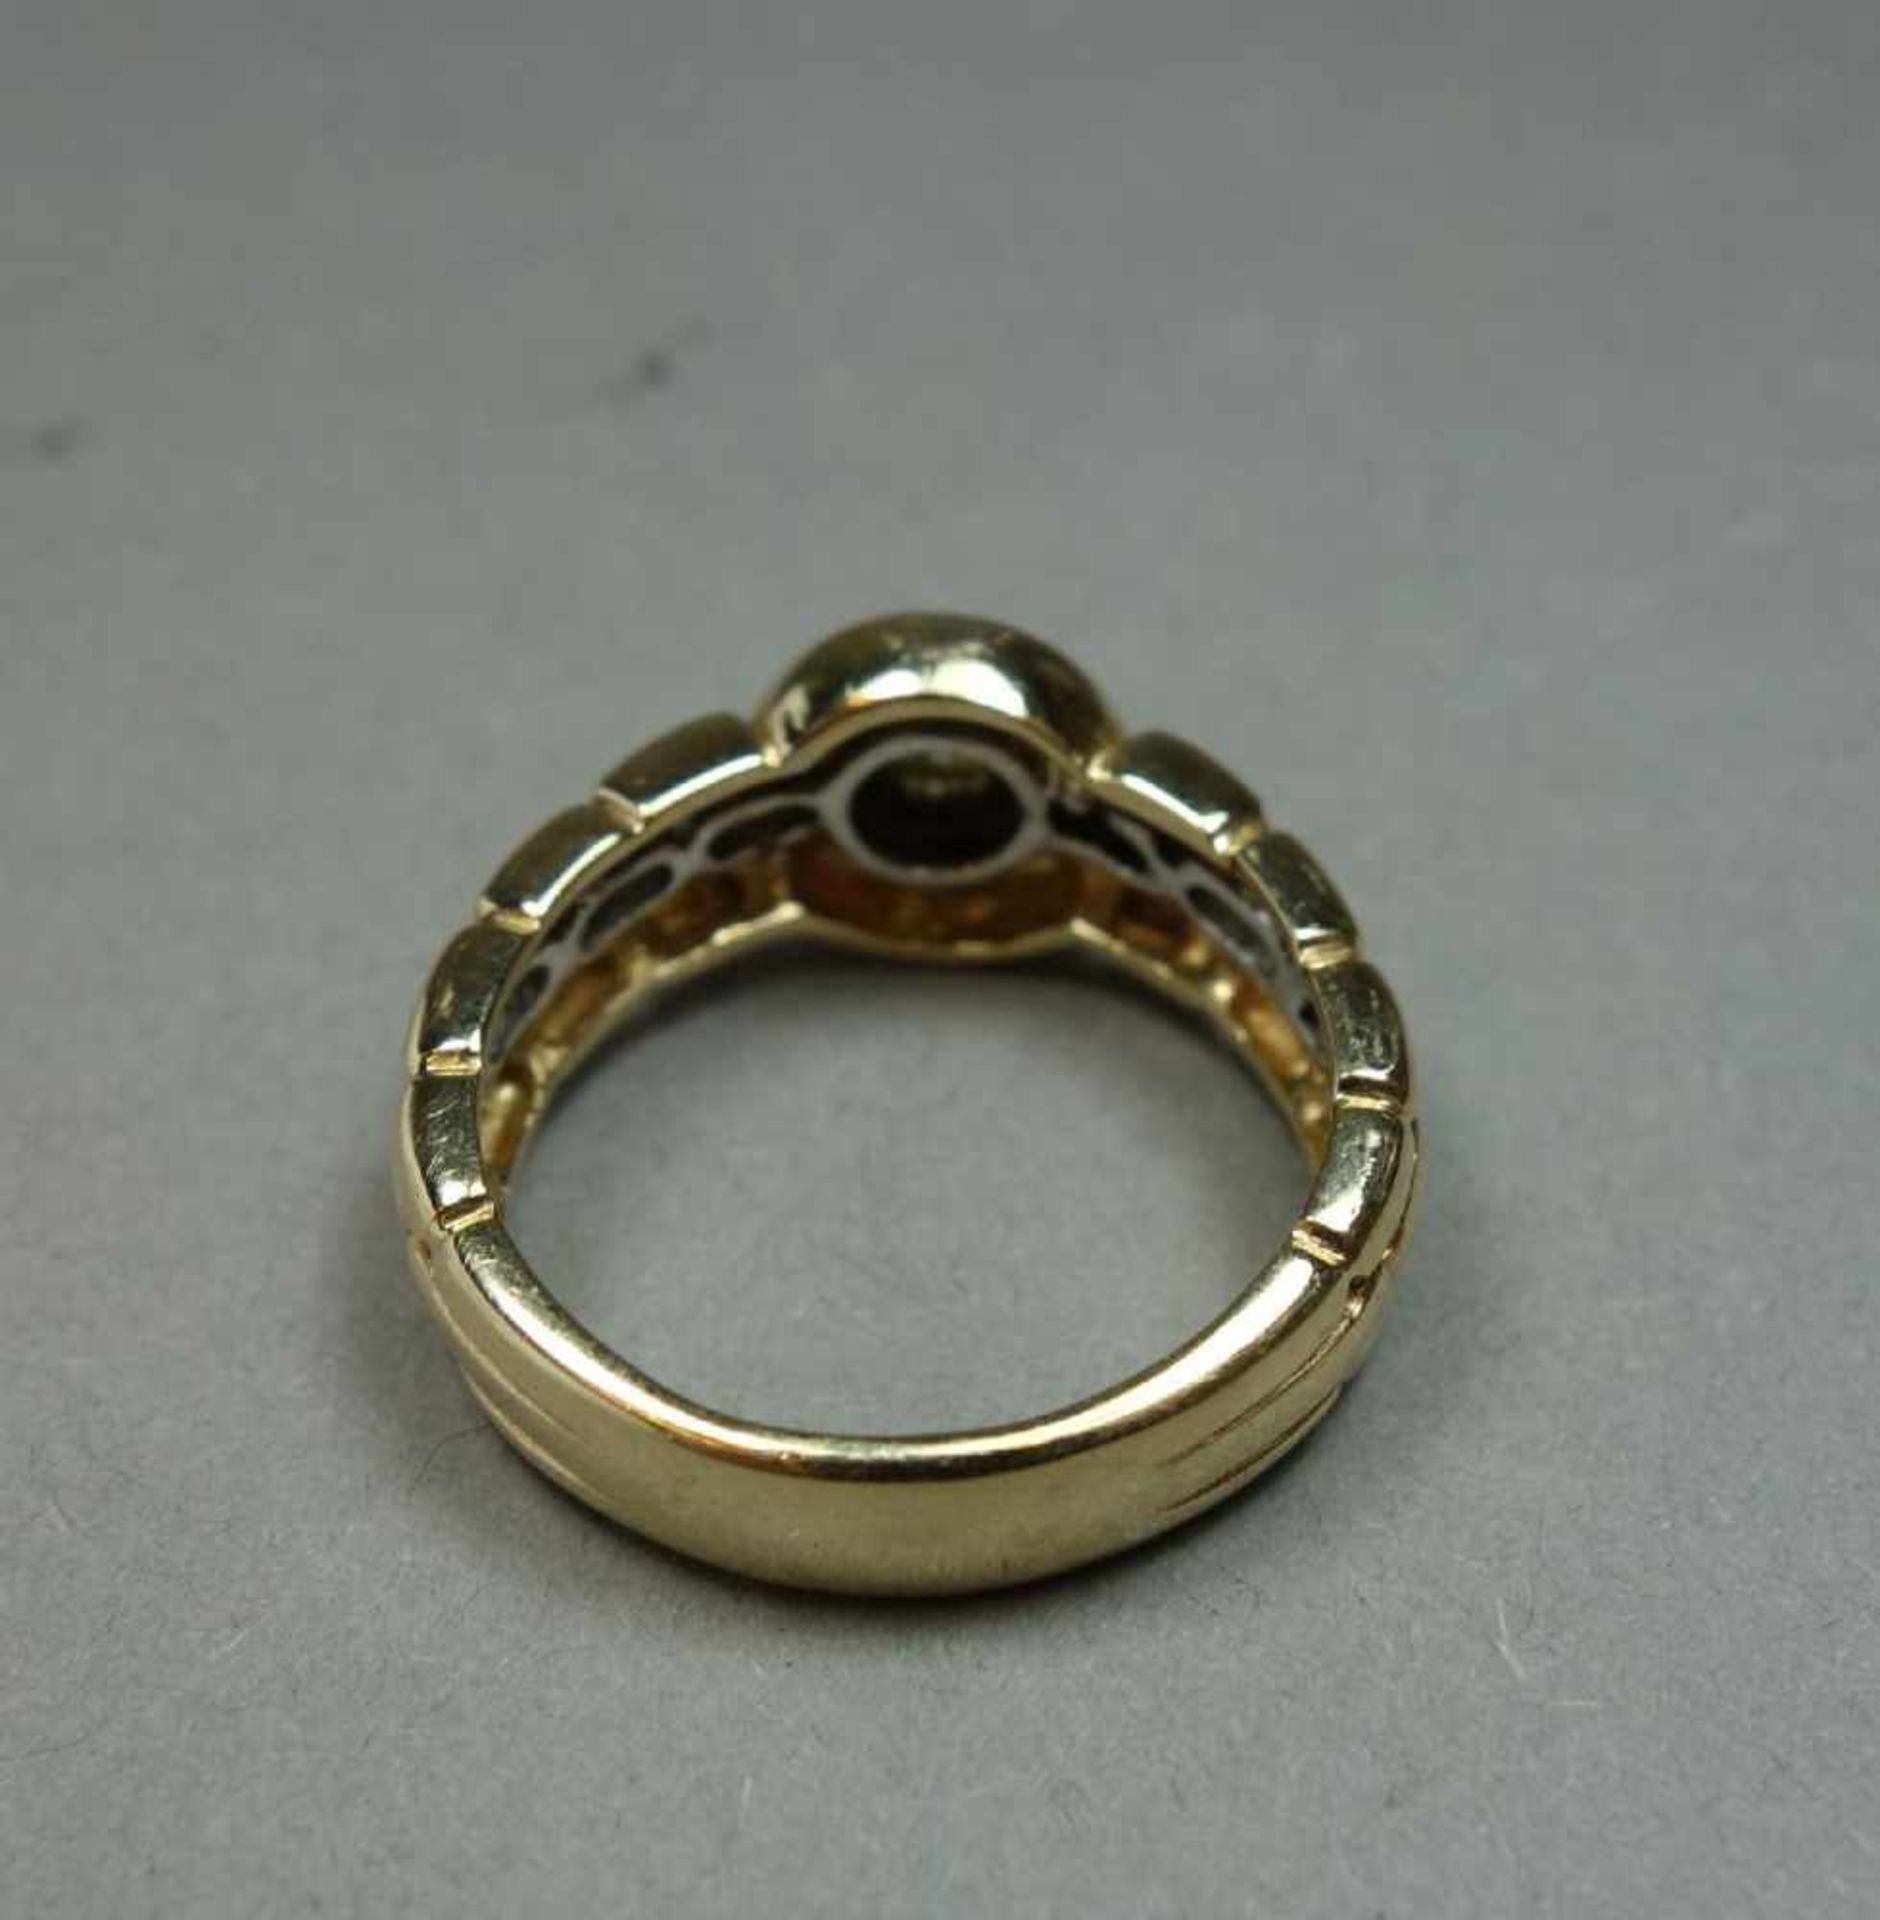 KLASSISCHER RING, bicolor, 585er Gold (6,9 g) besetzt mit Brillanten von 0,15 ct., Ring-Gr. 57. - Bild 3 aus 4